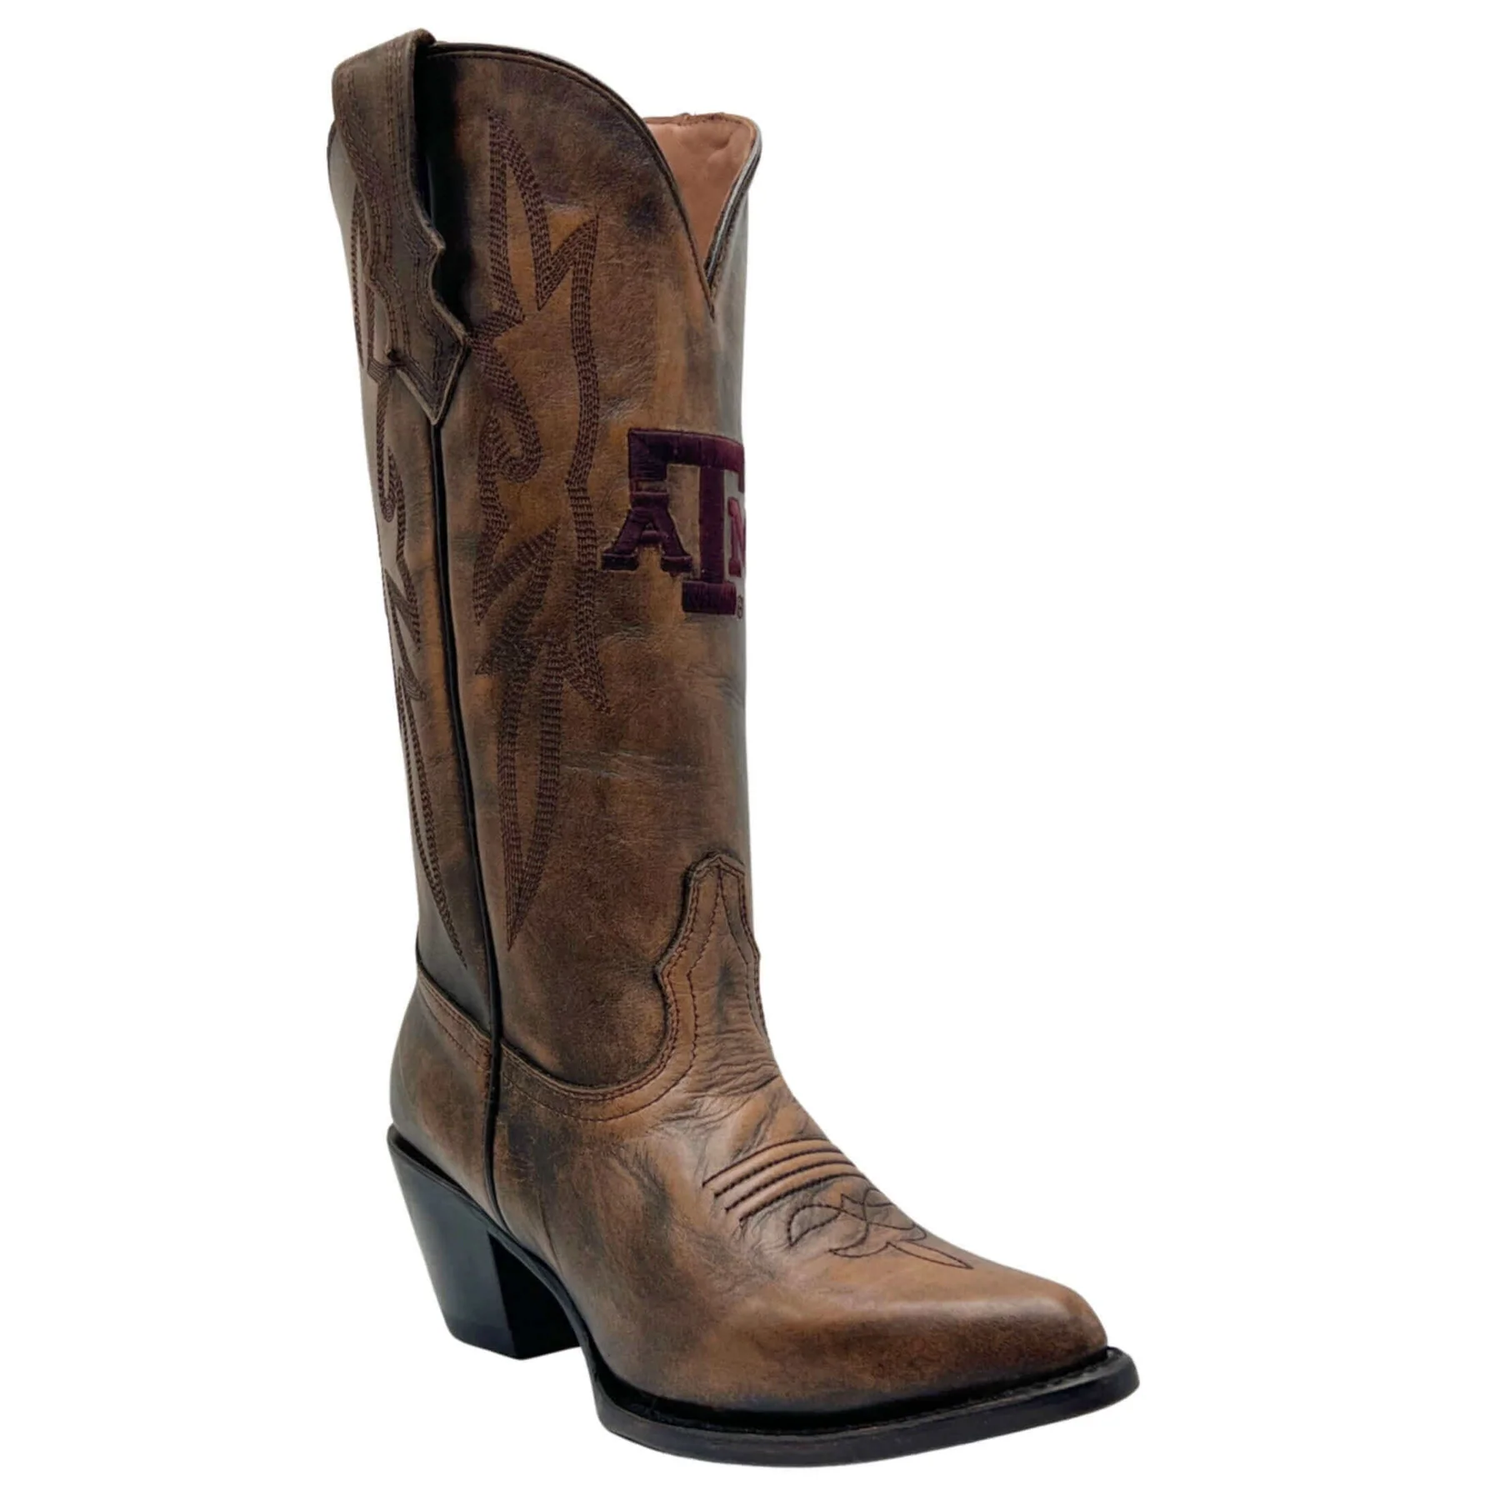 Texas A&M Chelsie Boot